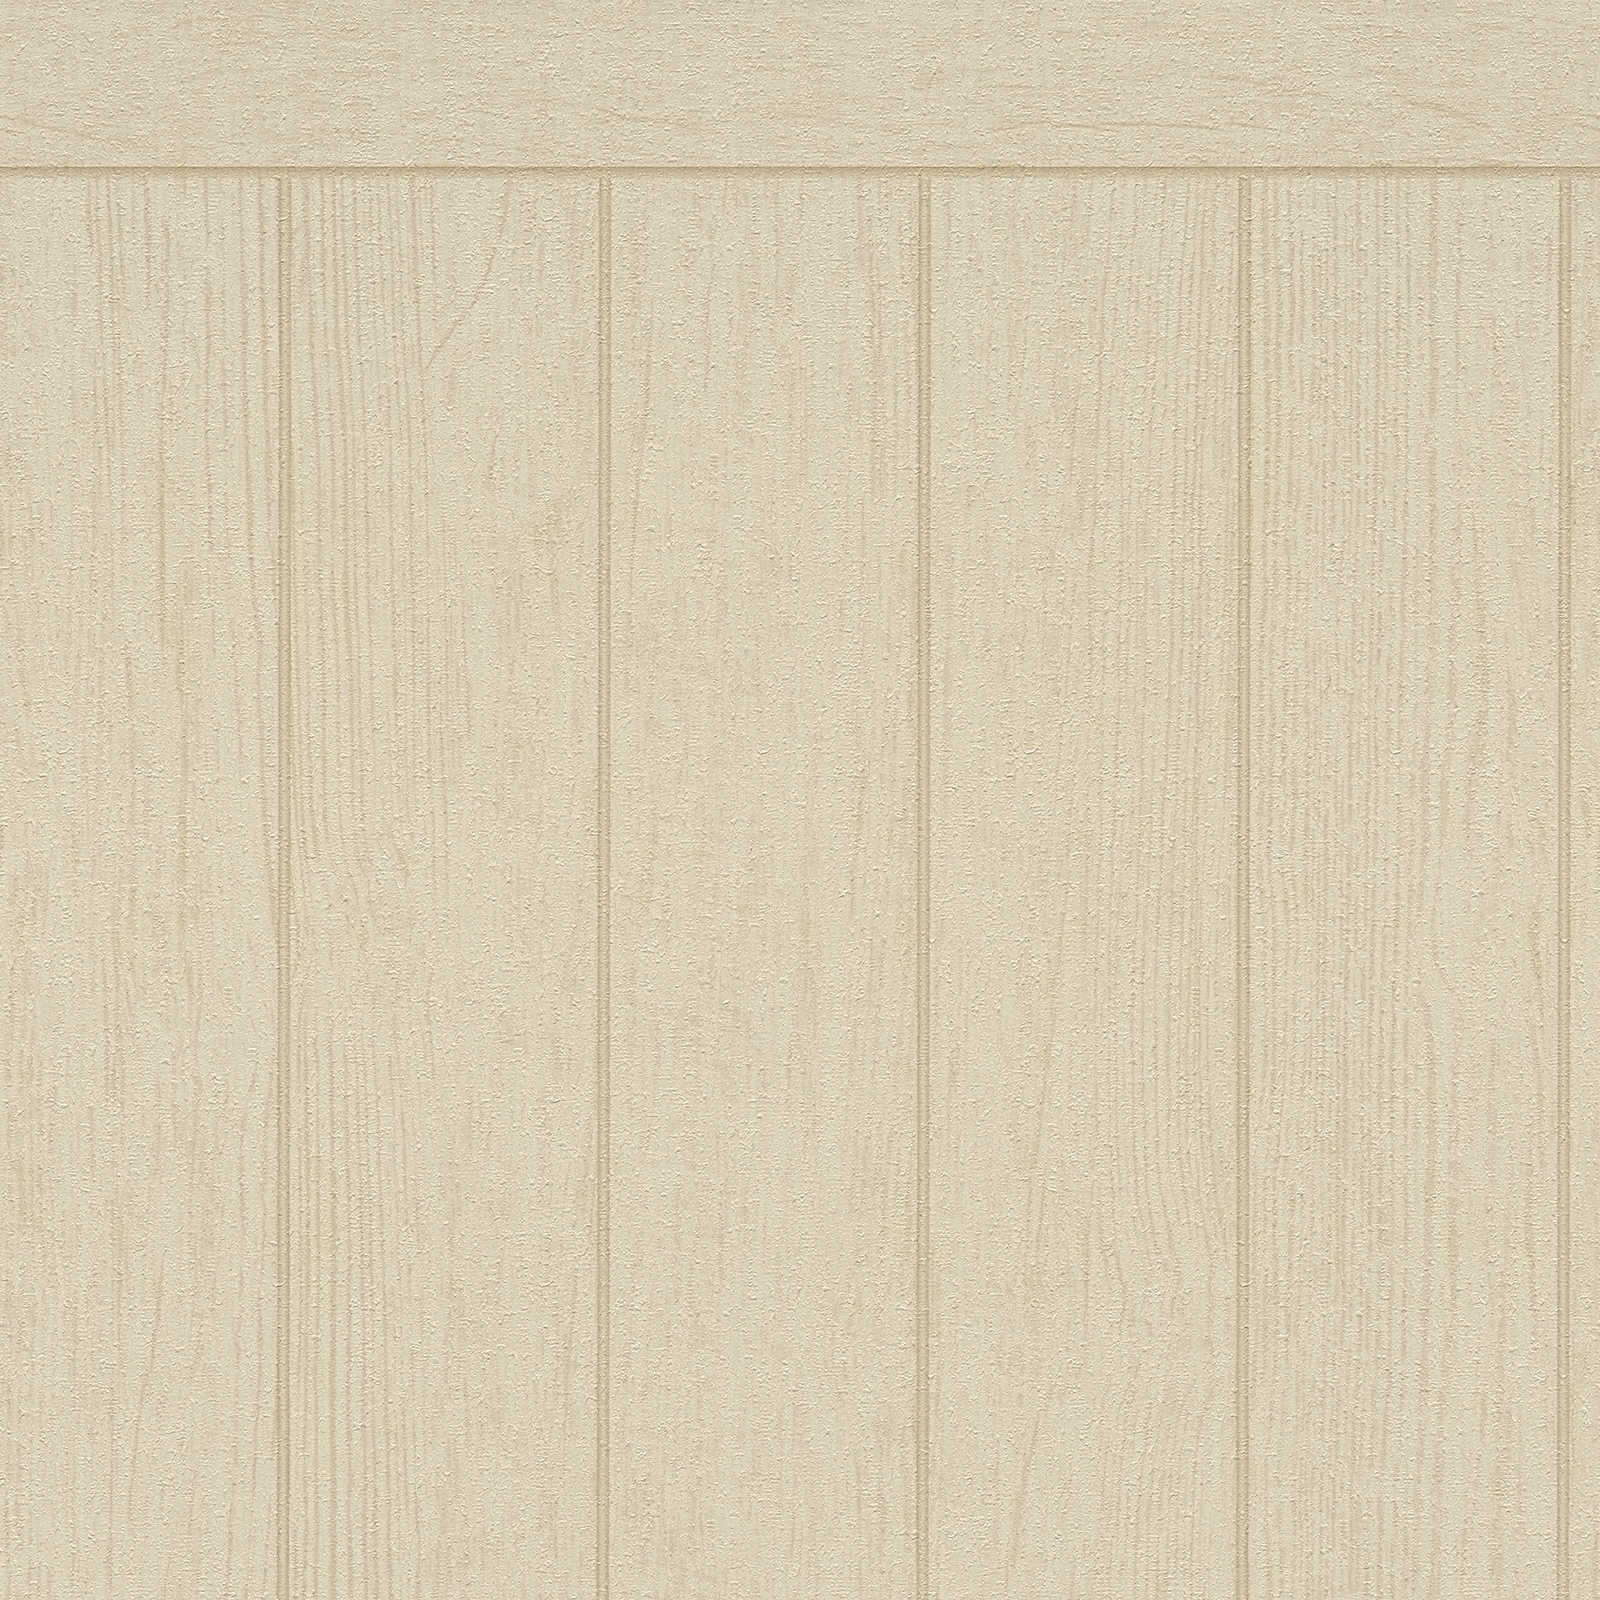 Vlies wandpaneel in houten balkenlook - beige, bruin
